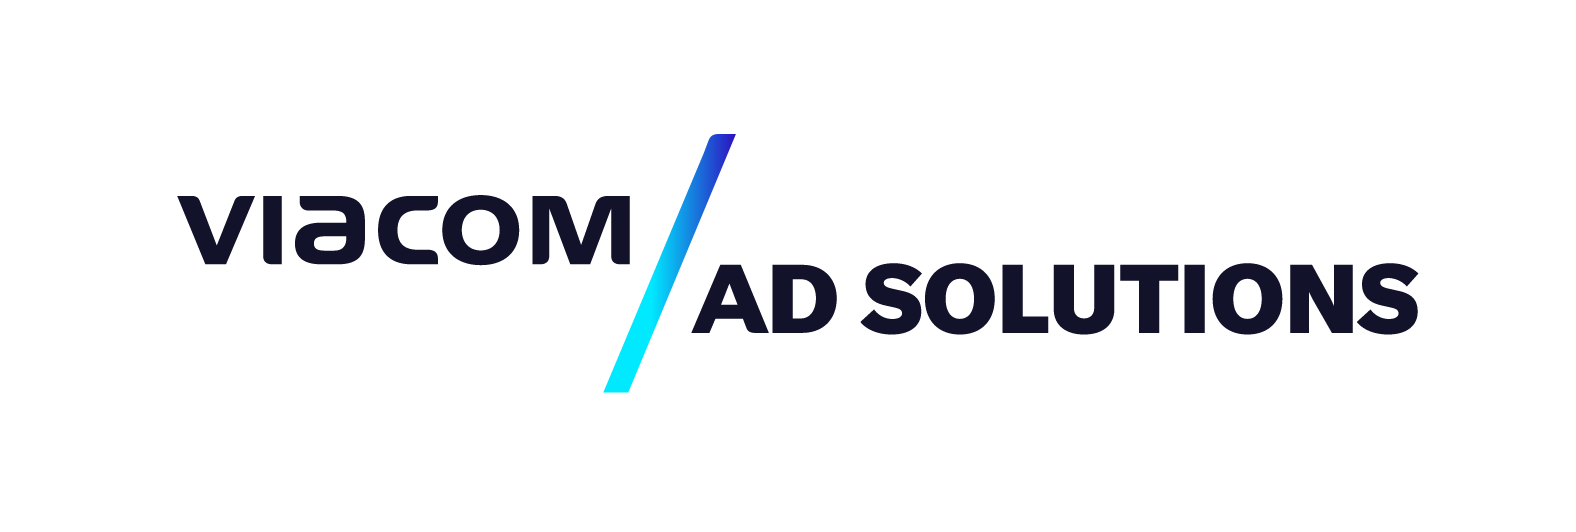 Viacom Ad Solutions